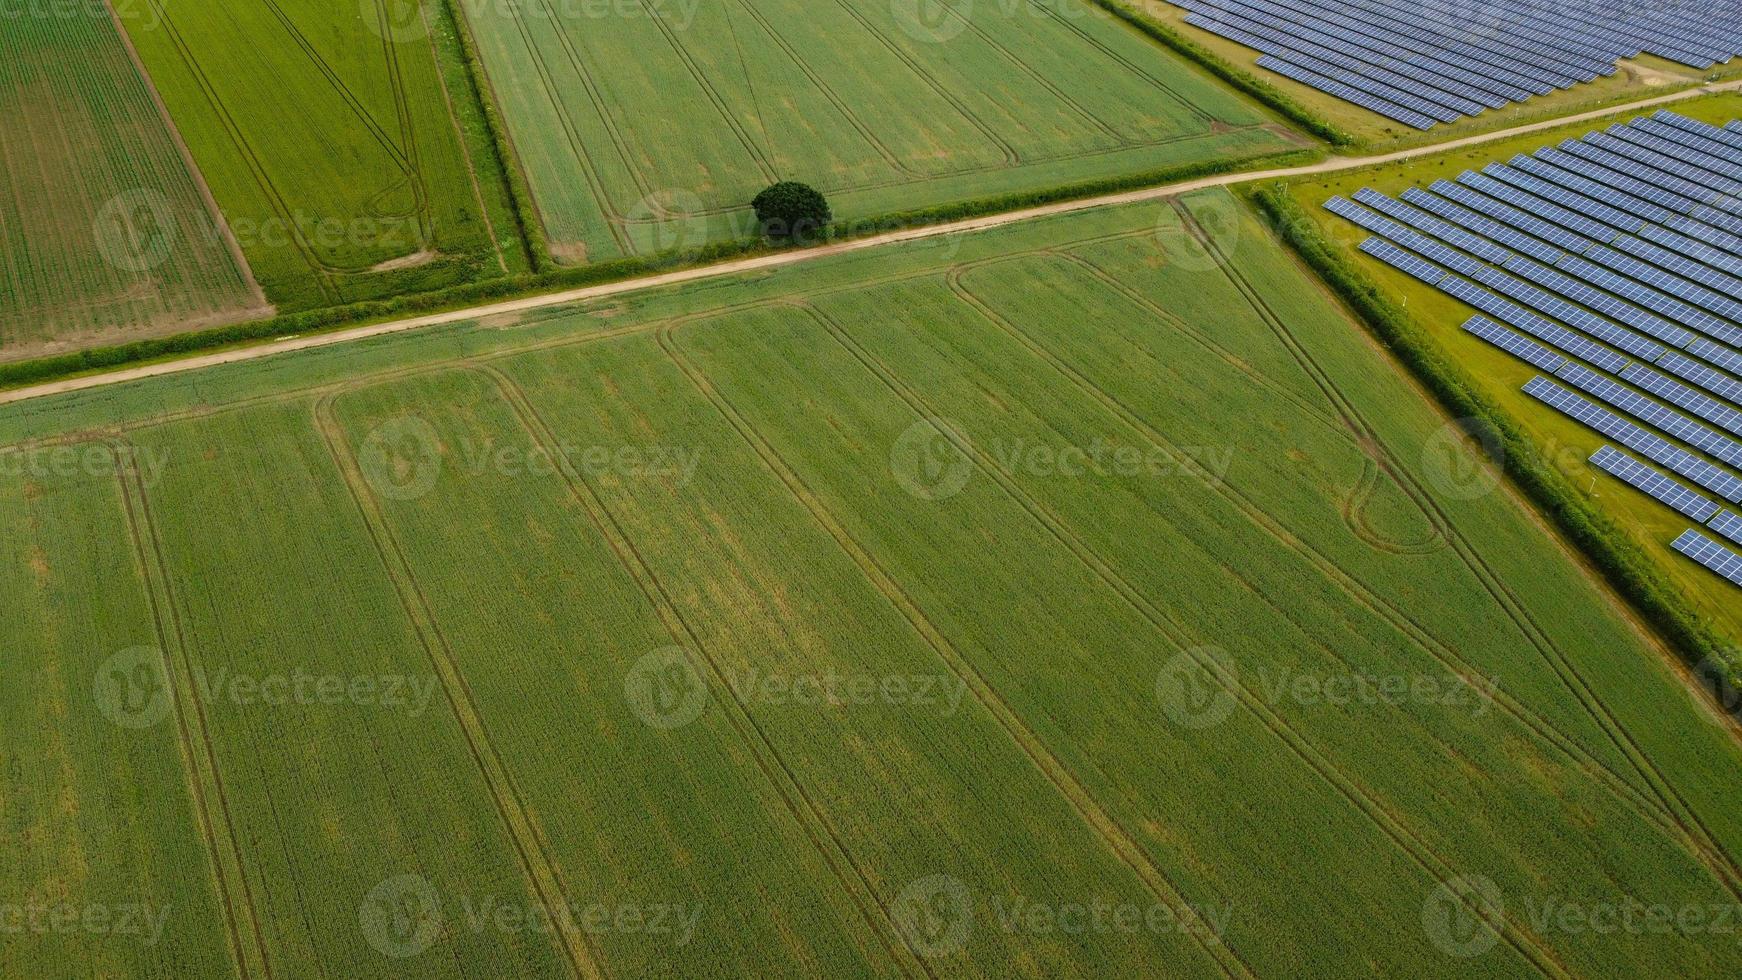 imágenes aéreas vista de ángulo alto de fuentes de generadores naturales de energía verde de turbinas eólicas y granjas de paneles solares en Inglaterra, Reino Unido foto